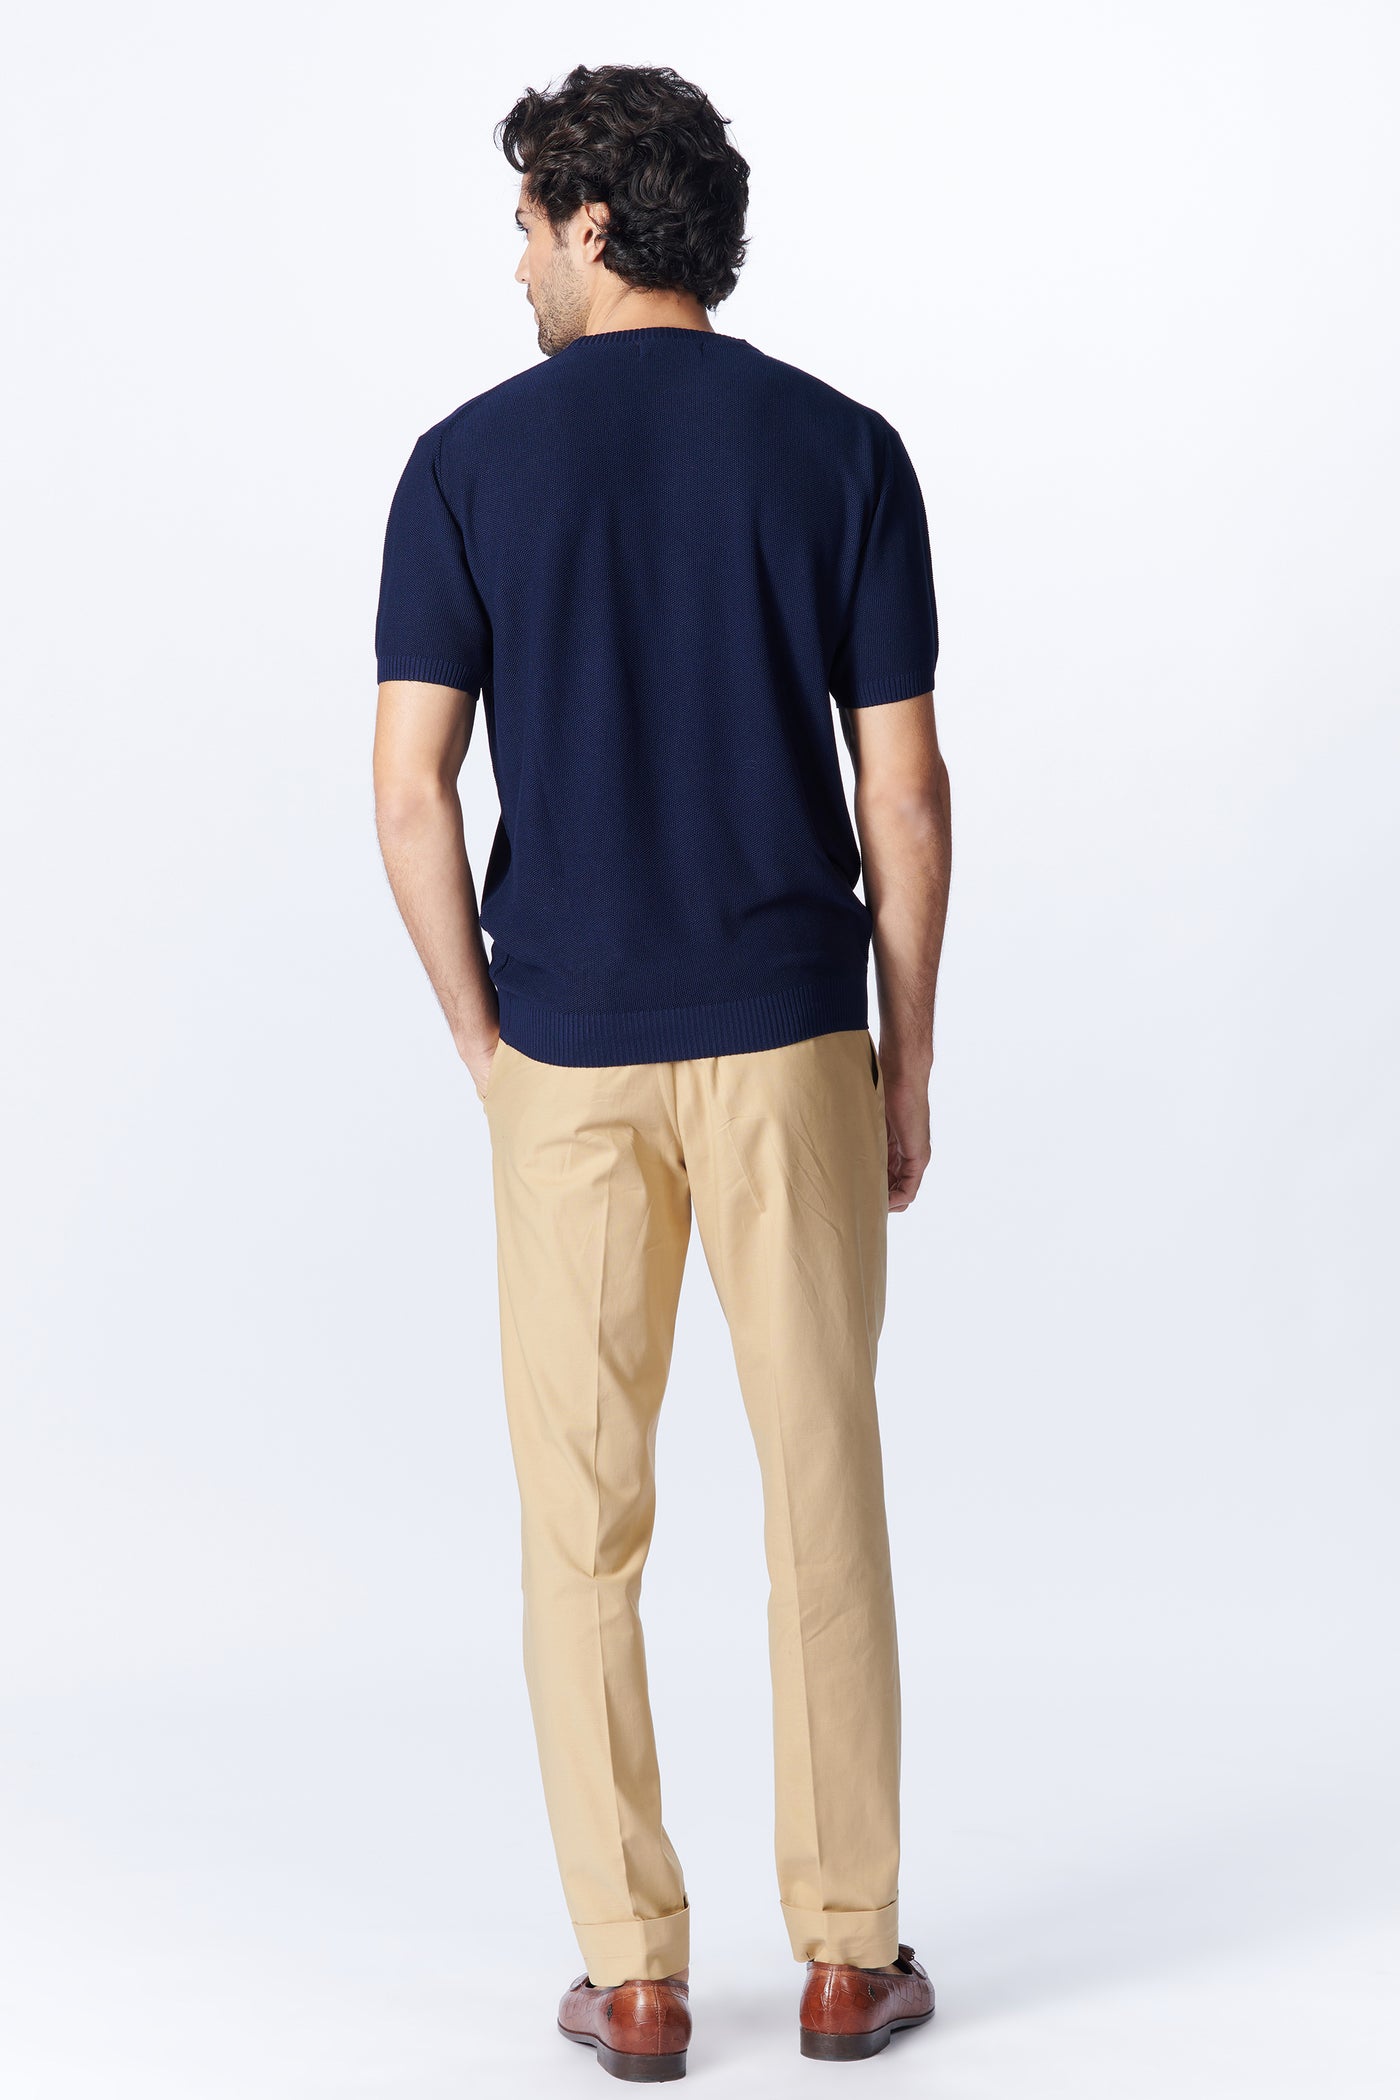 SN By Shantanu Nikhil Menswear SNCC Navy Knit T-Shirt indian designer wear online shopping melange singapore